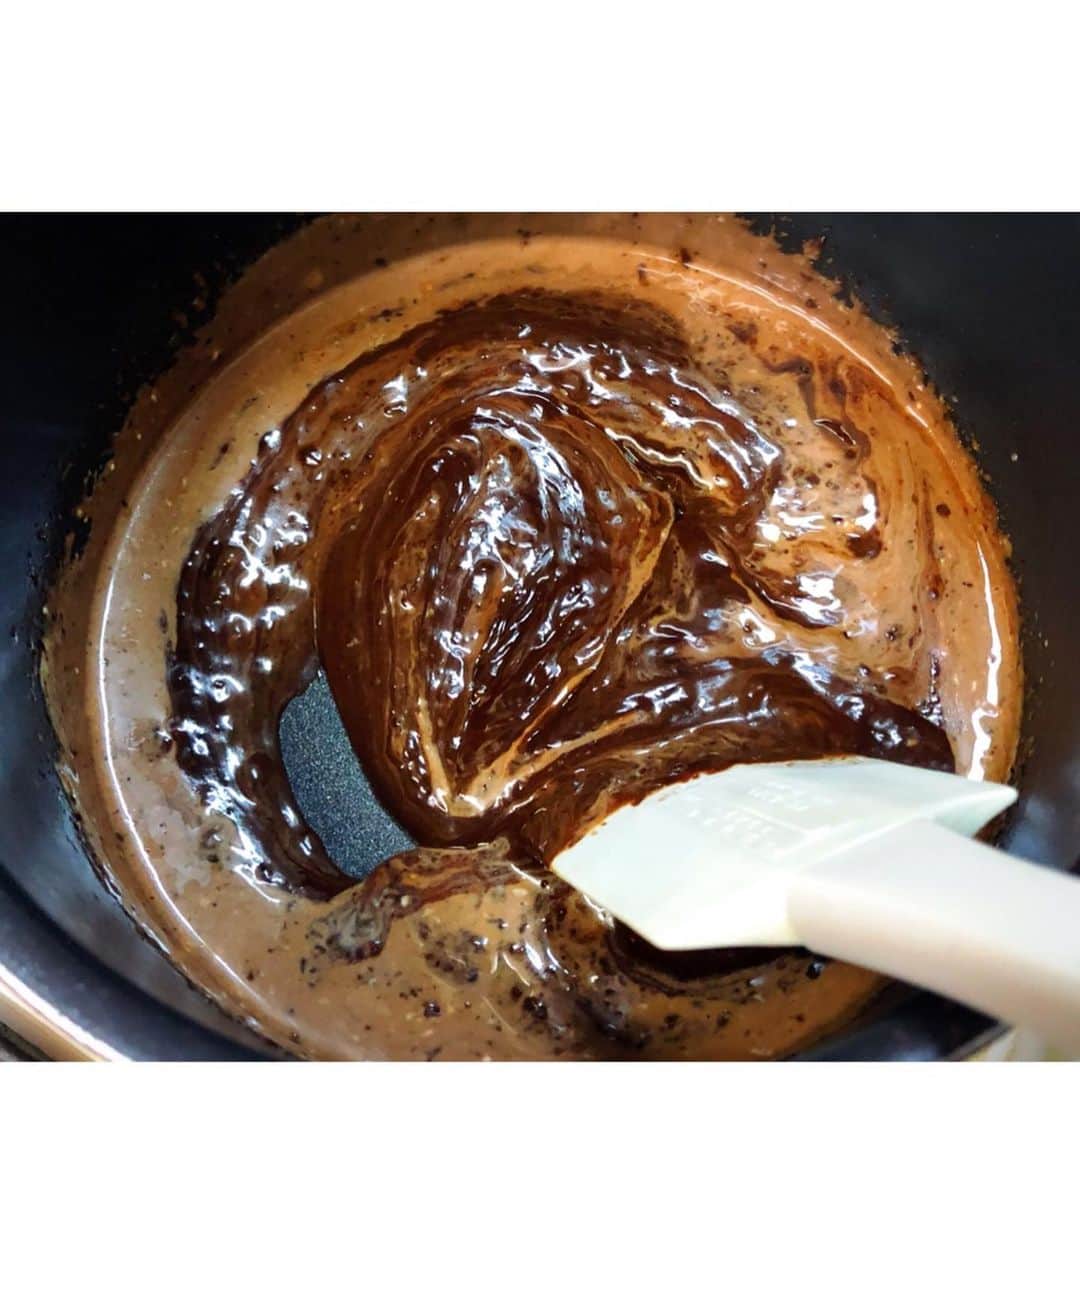 Mizuki【料理ブロガー・簡単レシピ】さんのインスタグラム写真 - (Mizuki【料理ブロガー・簡単レシピ】Instagram)「・﻿ 【レシピ】ーーーーーーー﻿ ♡混ぜて焼くだけ♡﻿ チョコレートチーズケーキ﻿ ーーーーーーーーーーーー﻿ ﻿ おはようございます(*^^*)﻿ 今日ご紹介させていただくのは﻿ チョコレートチーズケーキ♡﻿ 酸味を抑えたチーズ生地と﻿ チョコレートは相性がよく﻿ 濃厚でクリーミーな美味しさですよ♡﻿ 今回は薄力粉を加えず﻿ よりなめらかな食感に仕上げました♩﻿ ﻿ 作り方は超簡単(*´艸`)﻿ 混ぜて焼くだけ！！！﻿ 身近な材料で作れて﻿ 難しい工程もありません♡﻿ ﻿ 普段のおやつにはもちろん﻿ クリスマスにもおすすめなので﻿ よかったらお試し下さいね(*^^*)﻿ ﻿ ﻿ ーーーーーーーーーーーー﻿ 【15cm底取れ型】﻿ 板チョコ...2枚(100g)﻿ 生クリーム...100ml﻿ クリームチーズ...200g﻿ 砂糖...大2﻿ 卵...2個﻿ (好みで)ラム酒...小1/2﻿ ココアビスケット...60g﻿ バター...20g﻿ (仕上げ用)ココアパウダー...適量﻿ ﻿ (準備)﻿ クリームチーズは室温に戻して柔らかくする(レンジで40秒程加熱しても♩)。型にクッキングシートを敷いておく。チョコは細かく刻んでおく。オーブンを170度に予熱する。﻿ 1.(ボトムを作る)﻿ ココアビスケットを細かく砕き、レンジで溶かしたバターを加えて混ぜ、型の底に敷き詰めておく。﻿ 2.(生地を作る)﻿ 小鍋に生クリームを入れて火にかけ、沸騰直前で火を止める。すぐにチョコを加えて混ぜて溶かす。﻿ 3.ボウルにクリームチーズを入れ、泡立て器でなめらかに混ぜる。砂糖、卵、ラム酒、2の順に加え、その都度よく混ぜる。﻿ 4.(焼く)﻿ 型に注ぎ、予熱したオーブンで40分焼く。焼けたらアミに乗せて冷まし、冷蔵庫で一晩冷やす。仕上げにココアを振る。﻿ ーーーーーーーーーーーー﻿ ﻿ ﻿ 《ポイント》﻿ ♦︎ブラックチョコレートを使用するのがおすすめです♩﻿ ♦︎ボトムはなくてもOK☆又ココアビスケットの代わりにプレーンタイプのビスケットで作っても♩﻿ ﻿ ﻿ ﻿ ﻿ 【お知らせ】﻿ ストーリーズでは一日数回﻿ 別レシピをご紹介しております(*^^*)﻿ ＊コメントは最新の投稿に下さいますよう﻿ お願い致しますm(_ _)m﻿ ﻿ ﻿ ﻿ 🎀新刊【#ほめられごはん 】🎀﻿ 🔹おかげさまで重版しました！🔹﻿ ﻿ ﻿ ﻿ ﻿ #ブログ更新しました﻿ ブログはホームのリンクよりご覧下さい↓﻿ @mizuki_31cafe﻿ 【Mizuki公式ラインブログ】﻿ https://lineblog.me/mizuki_official/﻿ ﻿ ﻿ ﻿ #チーズケーキ#チョコレートケーキ#チョコレートチーズケーキ#簡単#スイーツ#クリスマス#クリスマスケーキ﻿ #Mizuki#簡単レシピ#時短レシピ#節約レシピ#料理#レシピ#フーディーテーブル#おうちごはん#おうちカフェ#デリスタグラマー#料理好きな人と繋がりたい#料理ブロガー#おうちごはんlover#チョコレートチーズケーキm #foodpic#follow#cooking#recipe#lin_stagrammer」12月17日 7時19分 - mizuki_31cafe